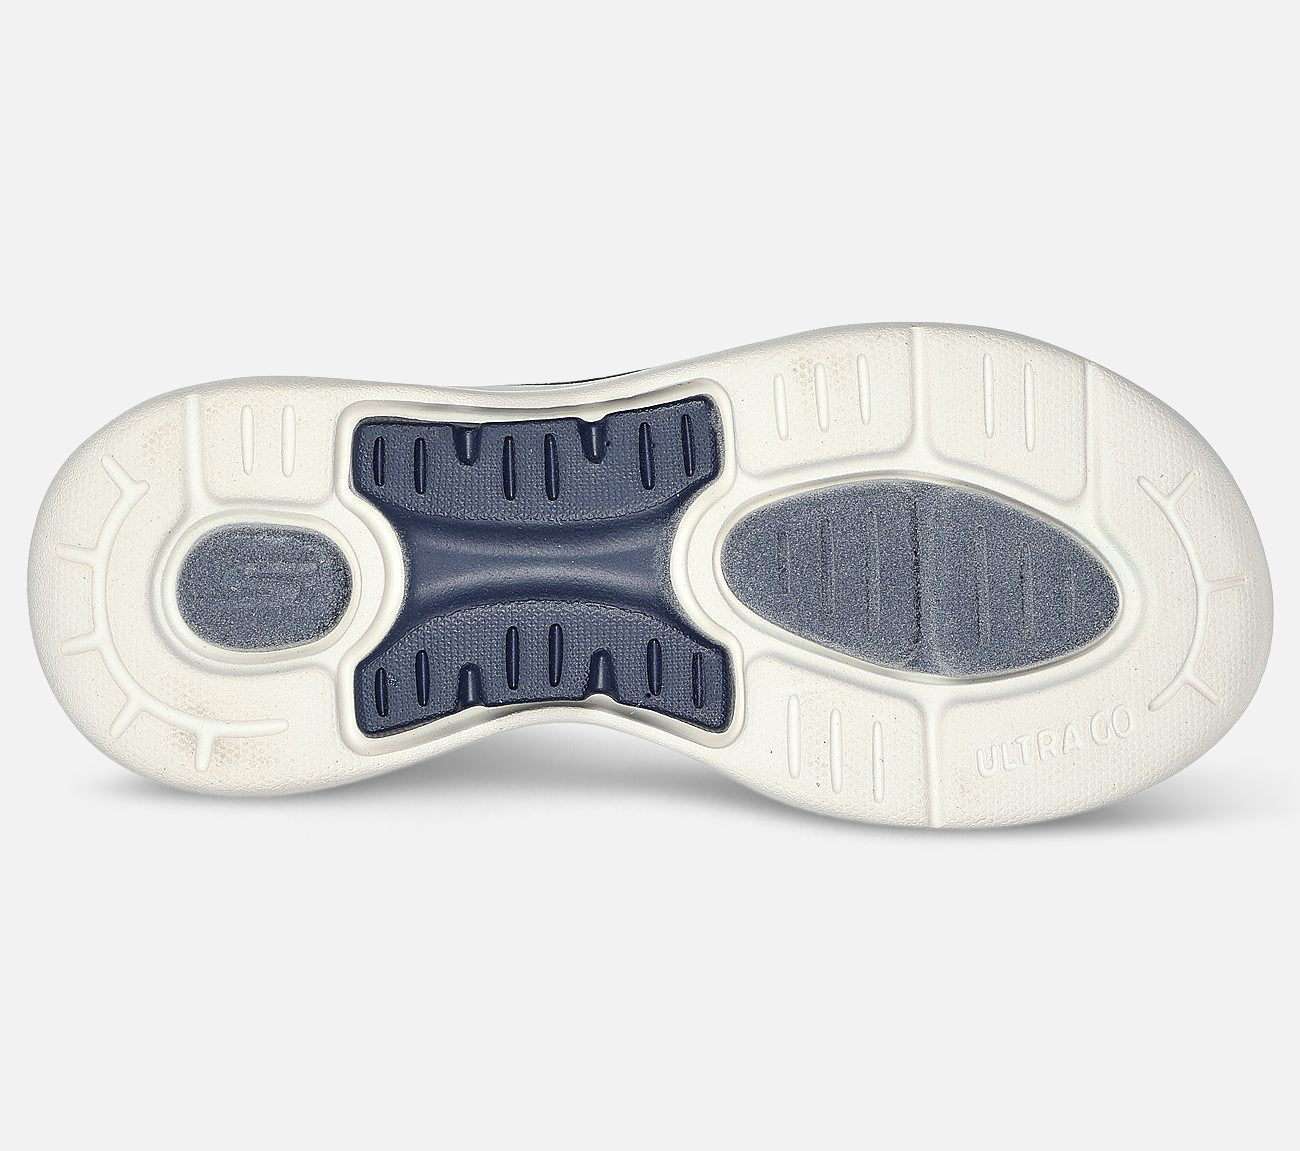 GO WALK Arch Fit - Polished Sandal Skechers